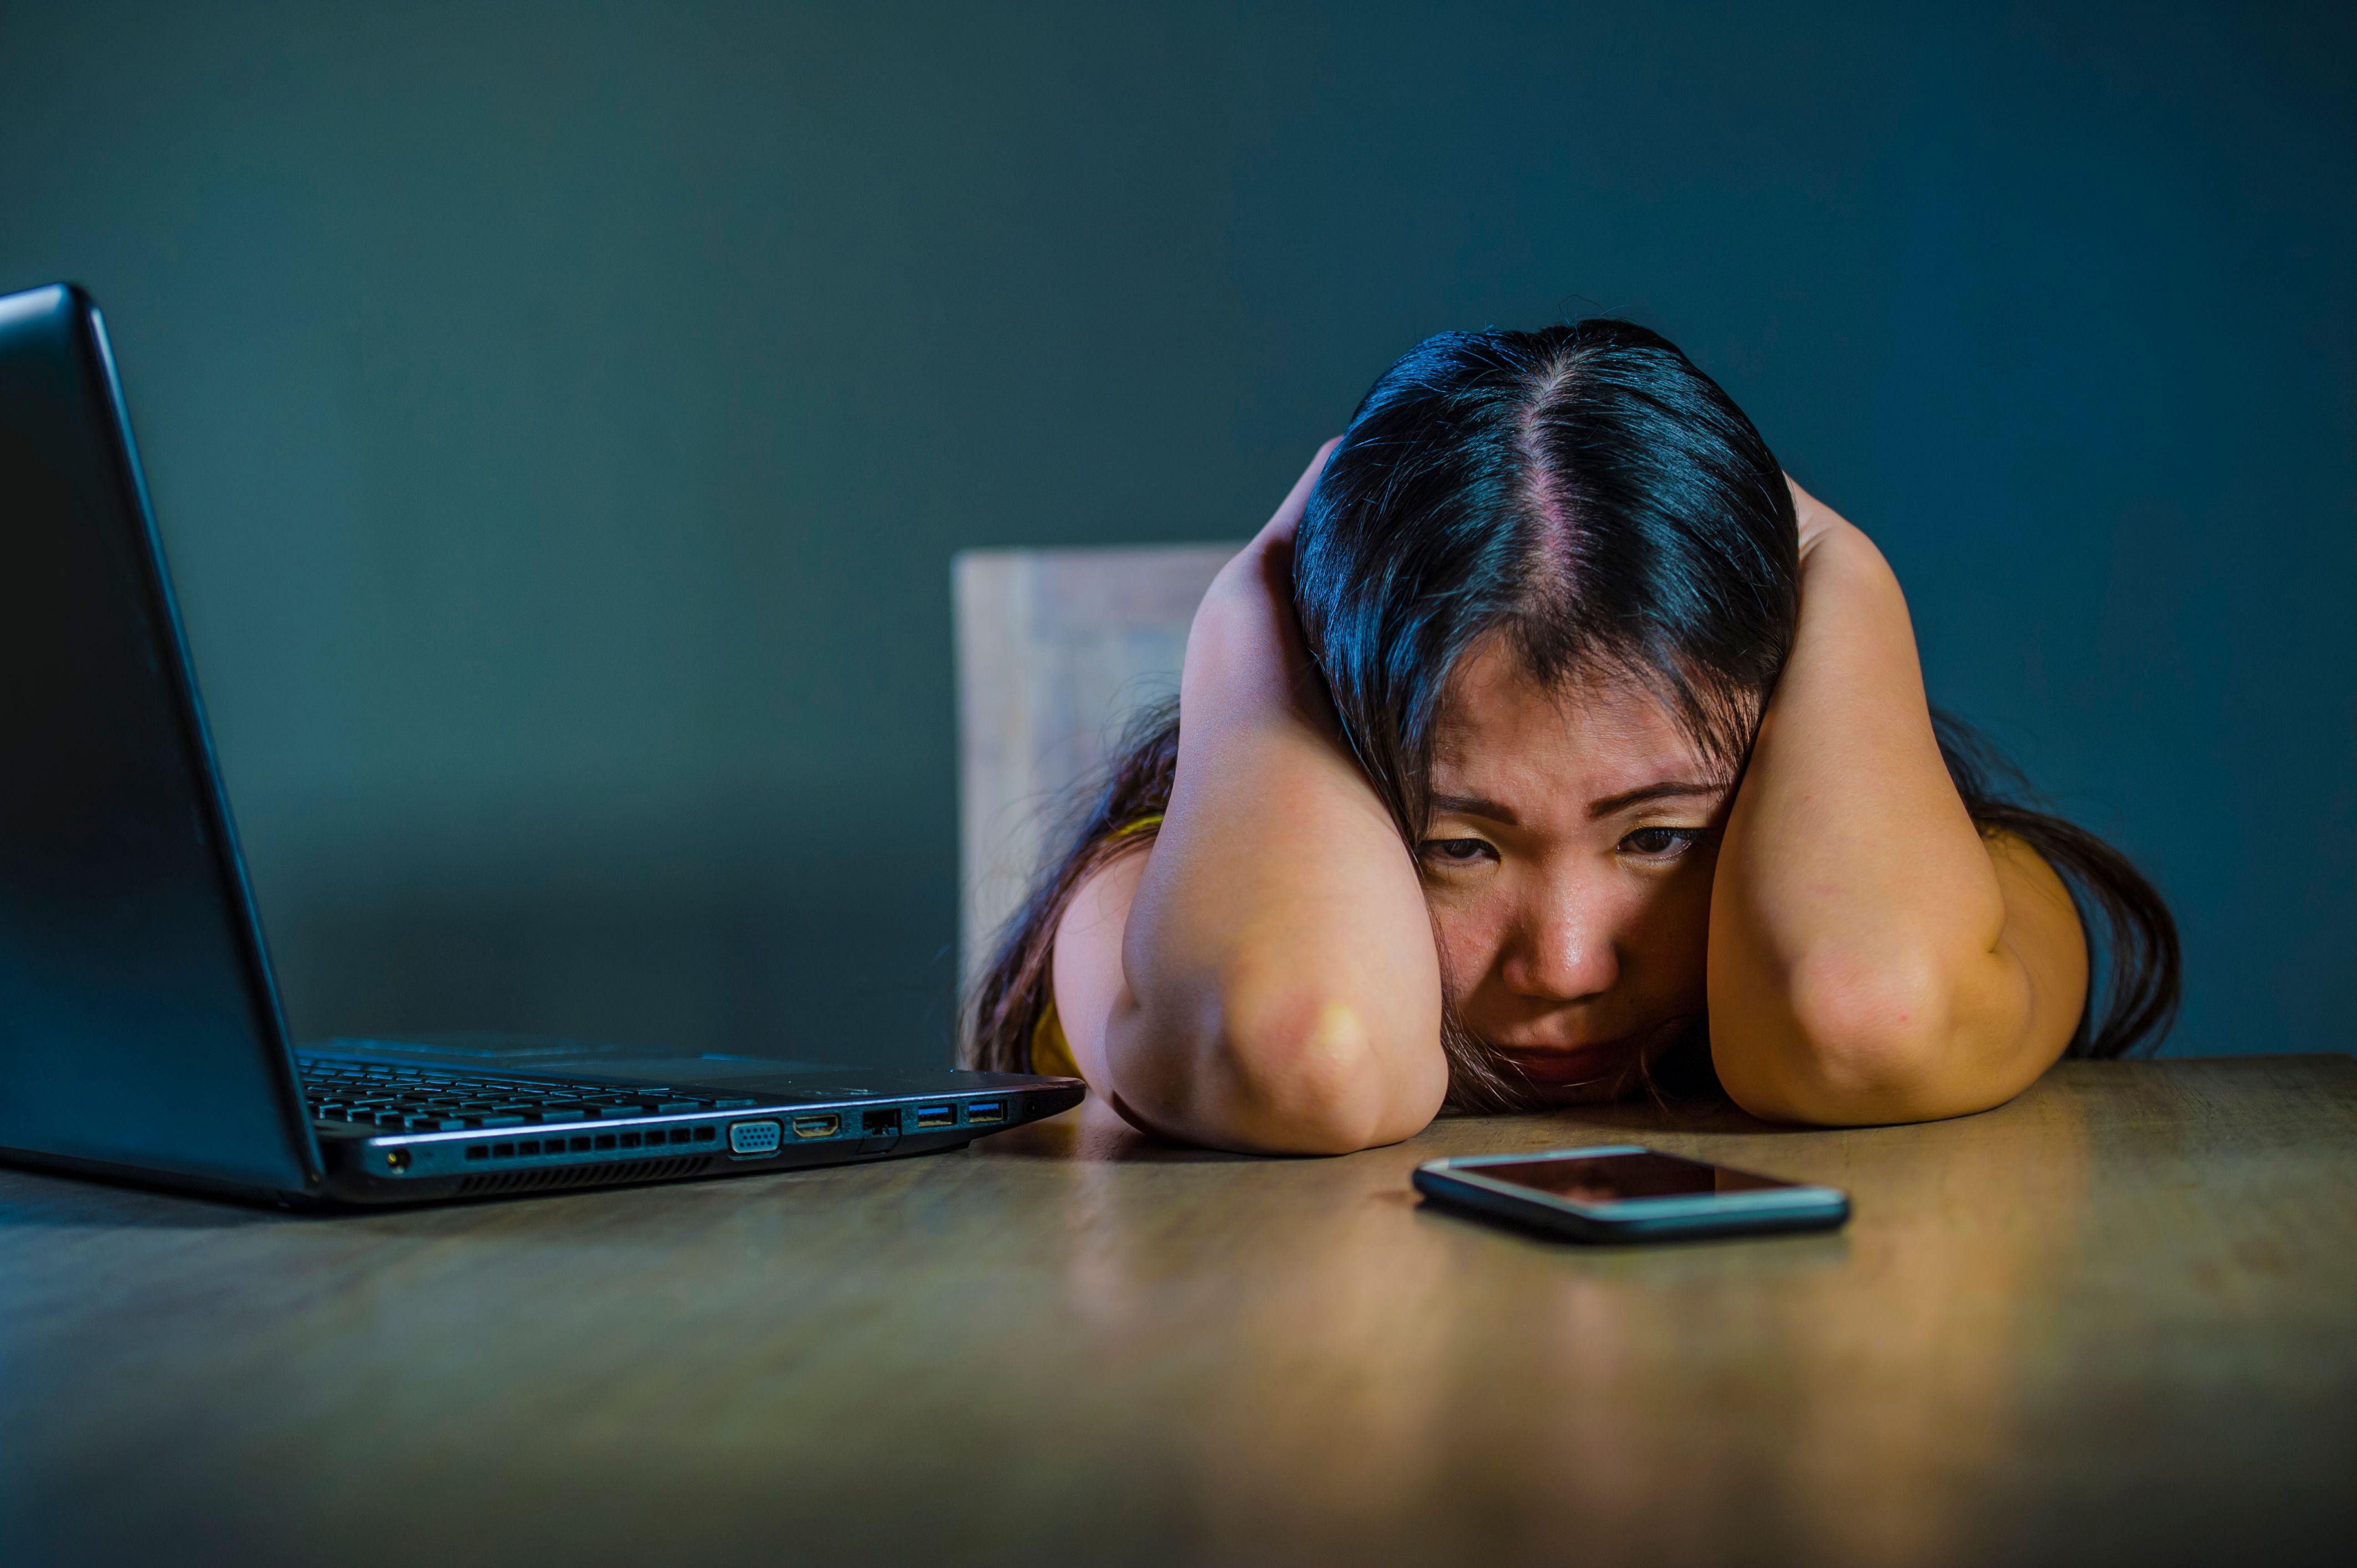 cyberbullying victim - Cos’è il cyberbullismo e come affrontarlo?